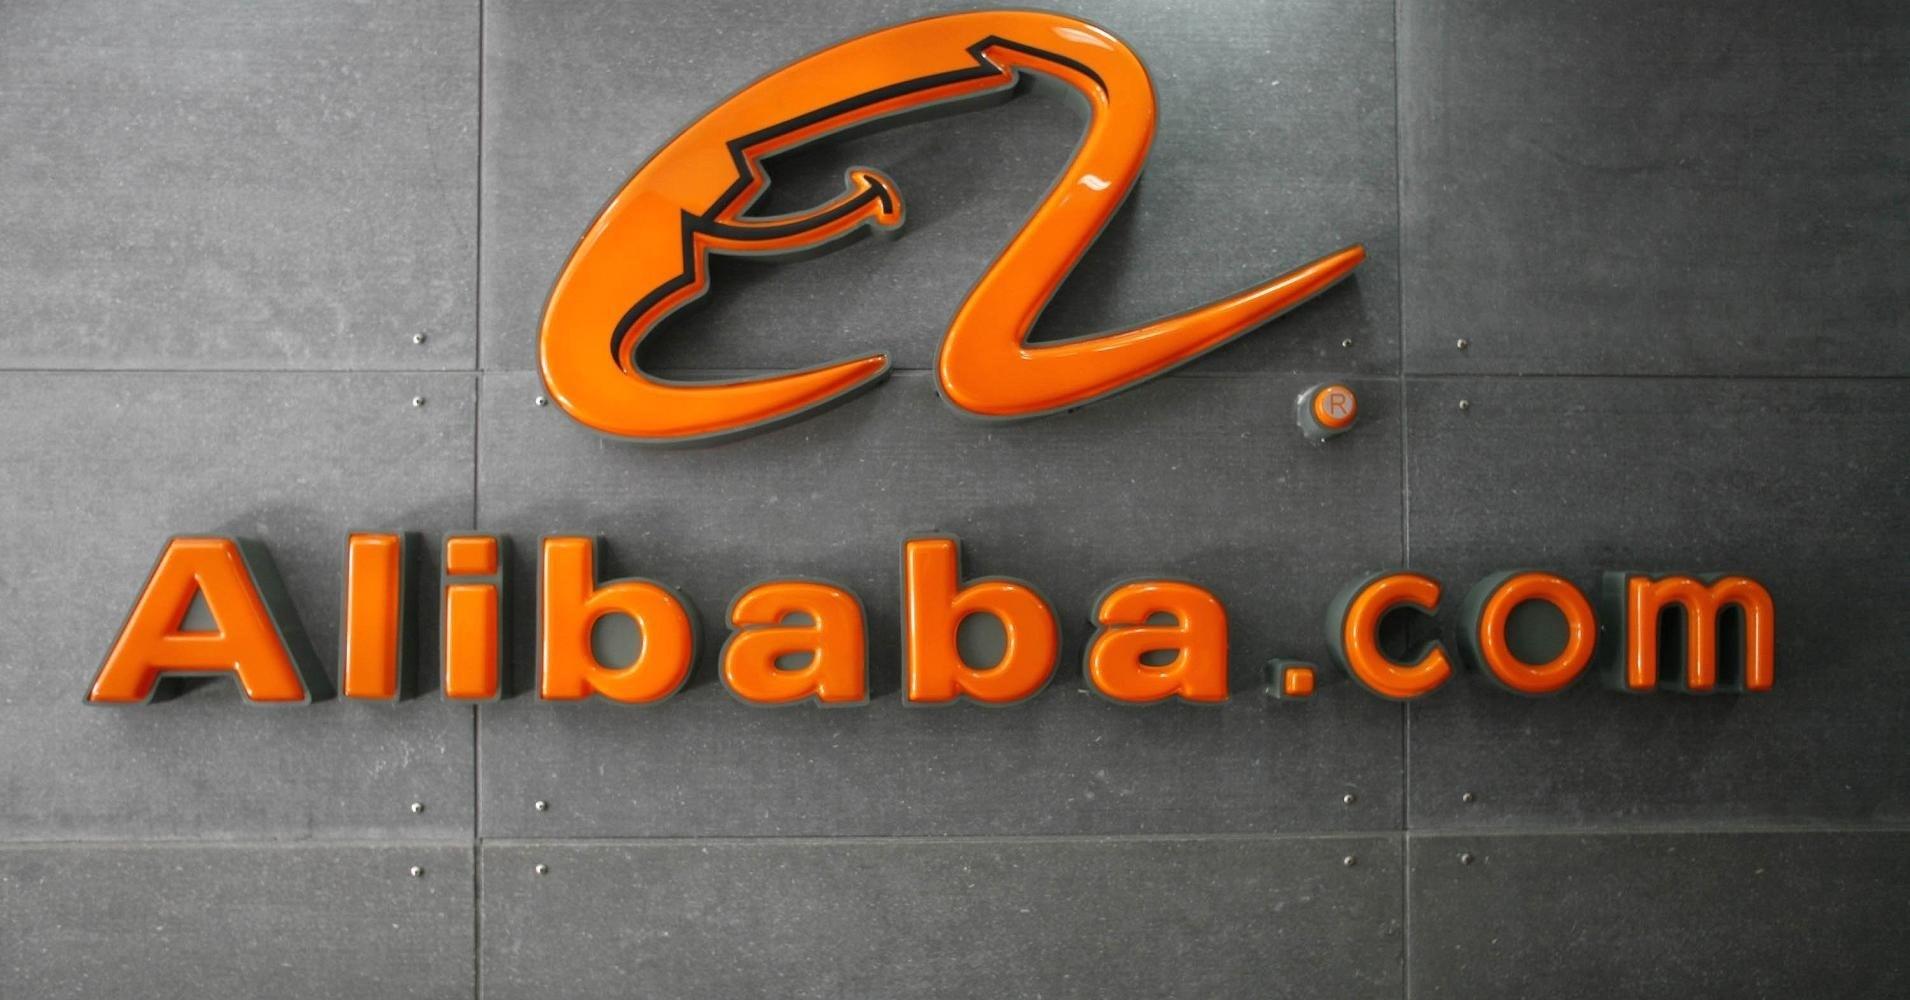 Alibaba Cloud extiende su alcance a Europa, Estados Unidos y Asia Pacífico al asociarse con Equinix